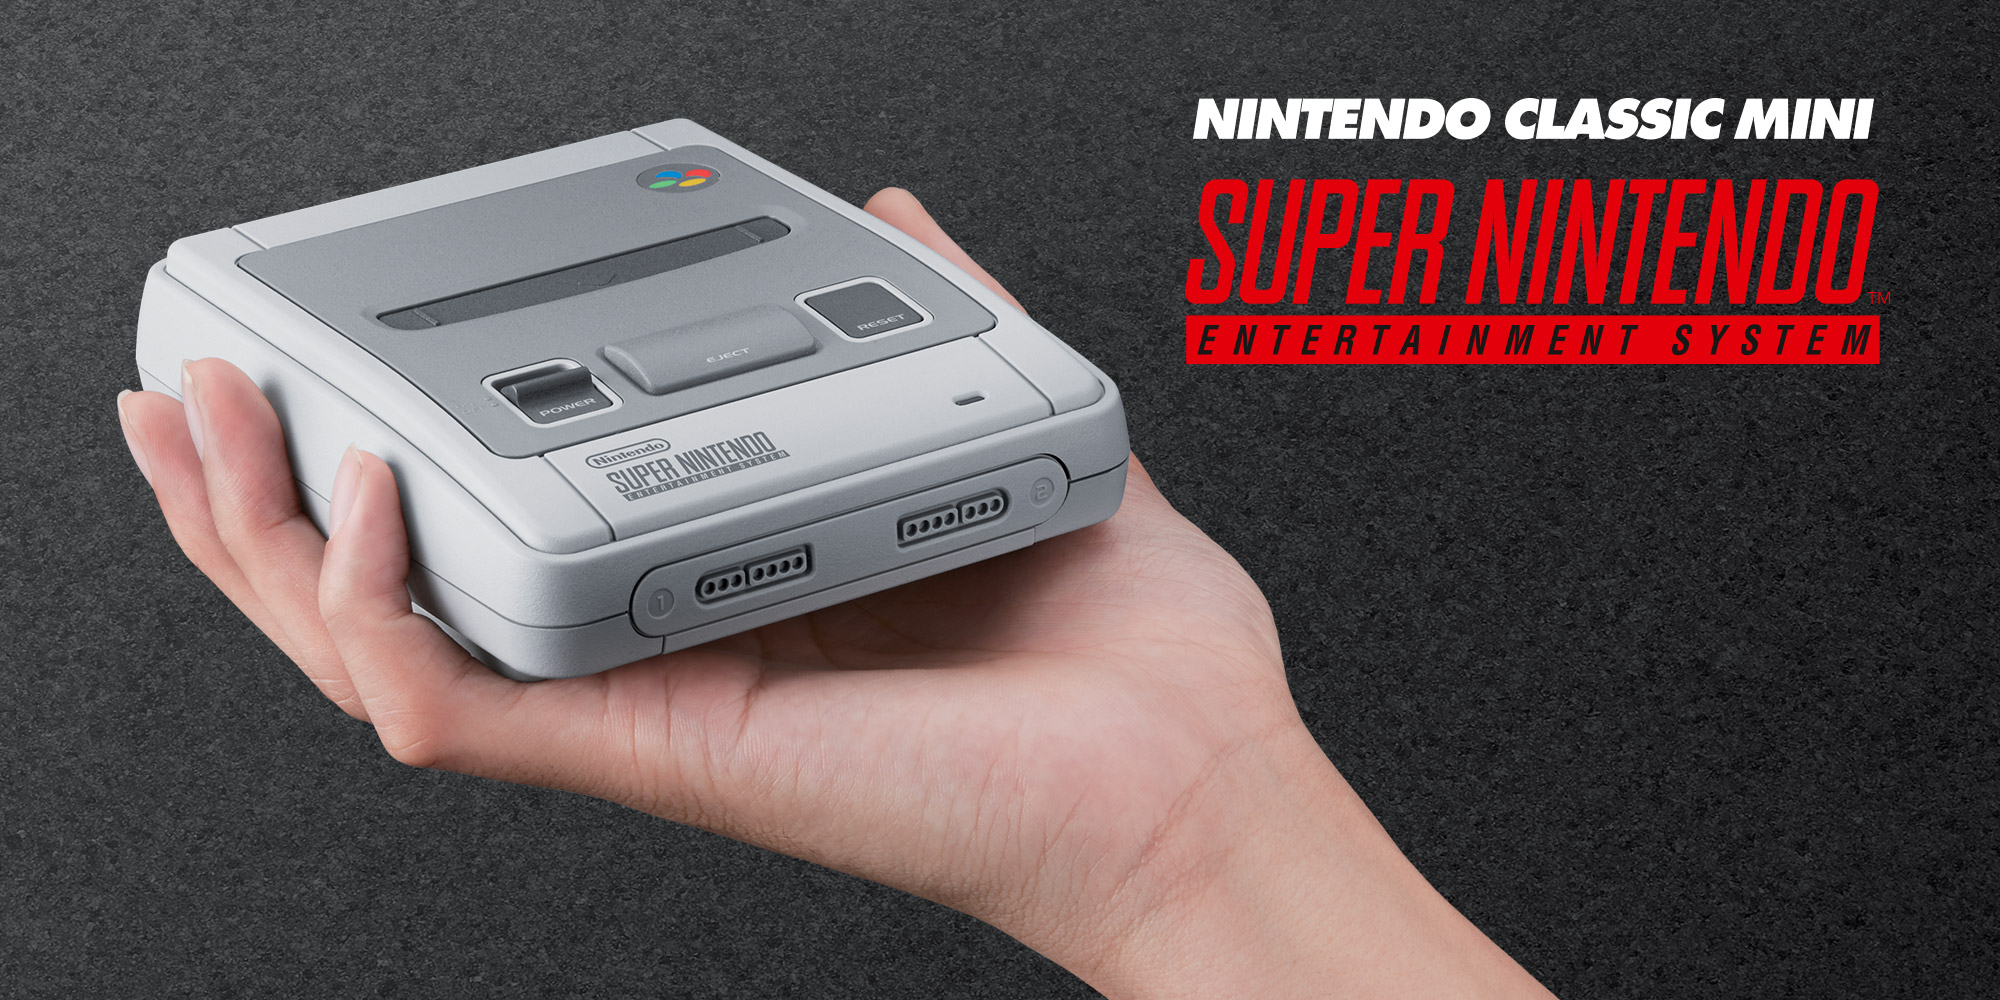 Nintendo annuncia un nuovo arrivo: Nintendo Classic Mini: Super Nintendo Entertainment System